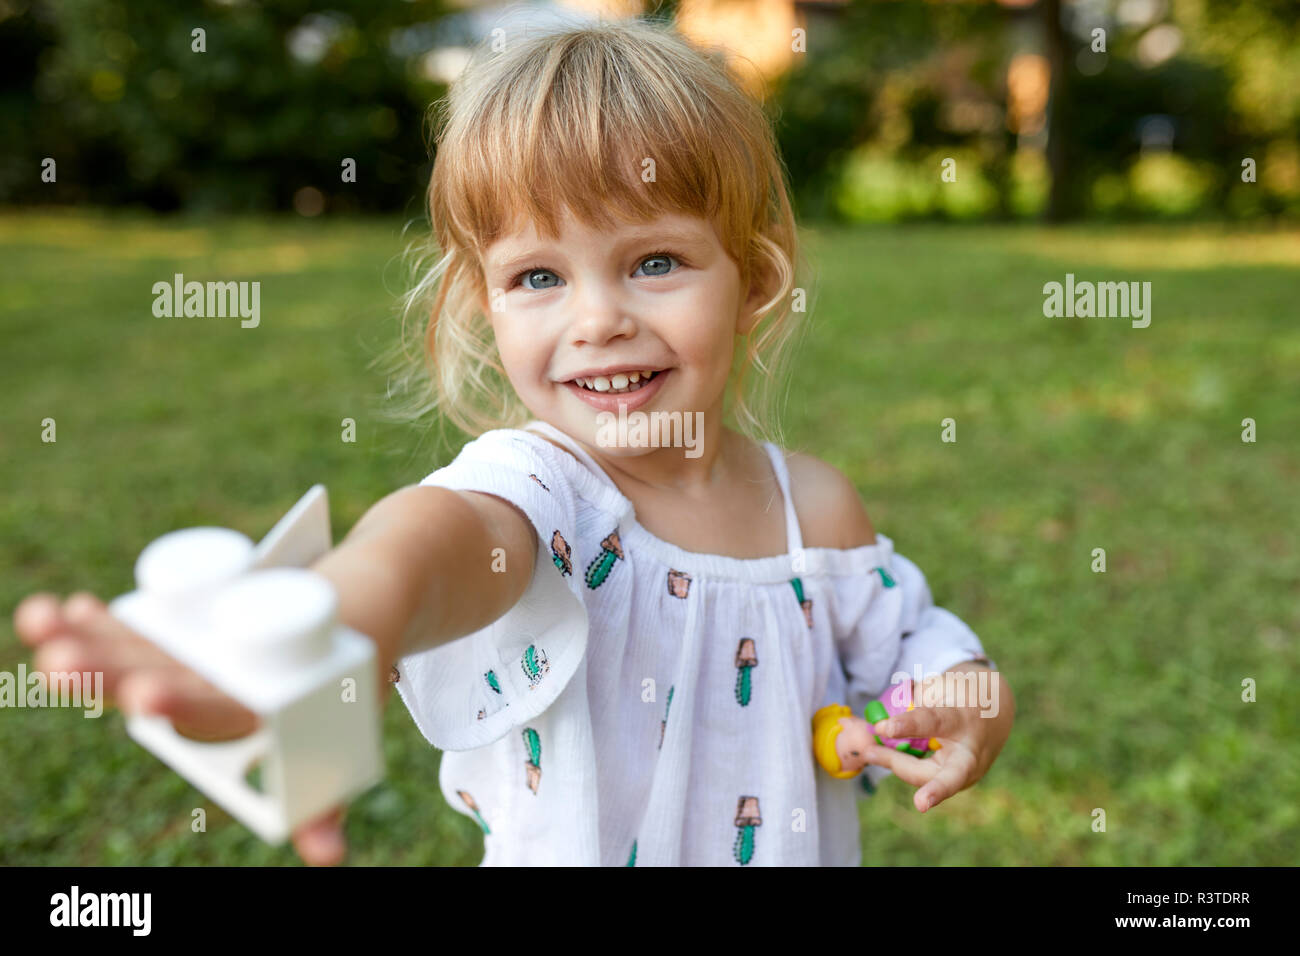 Portrait of cute little girl in garden Stock Photo